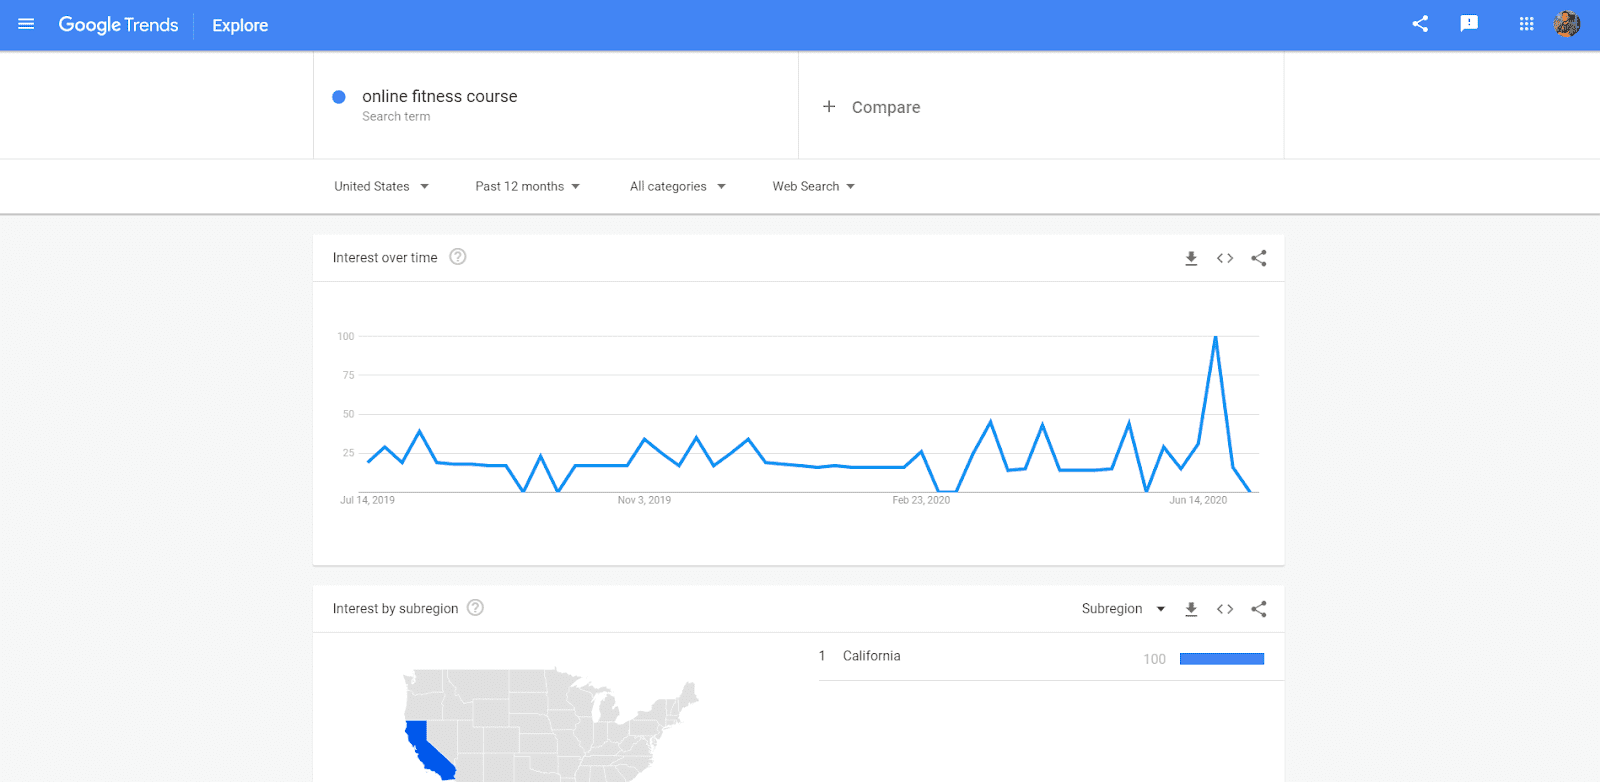 Google trends snapshot